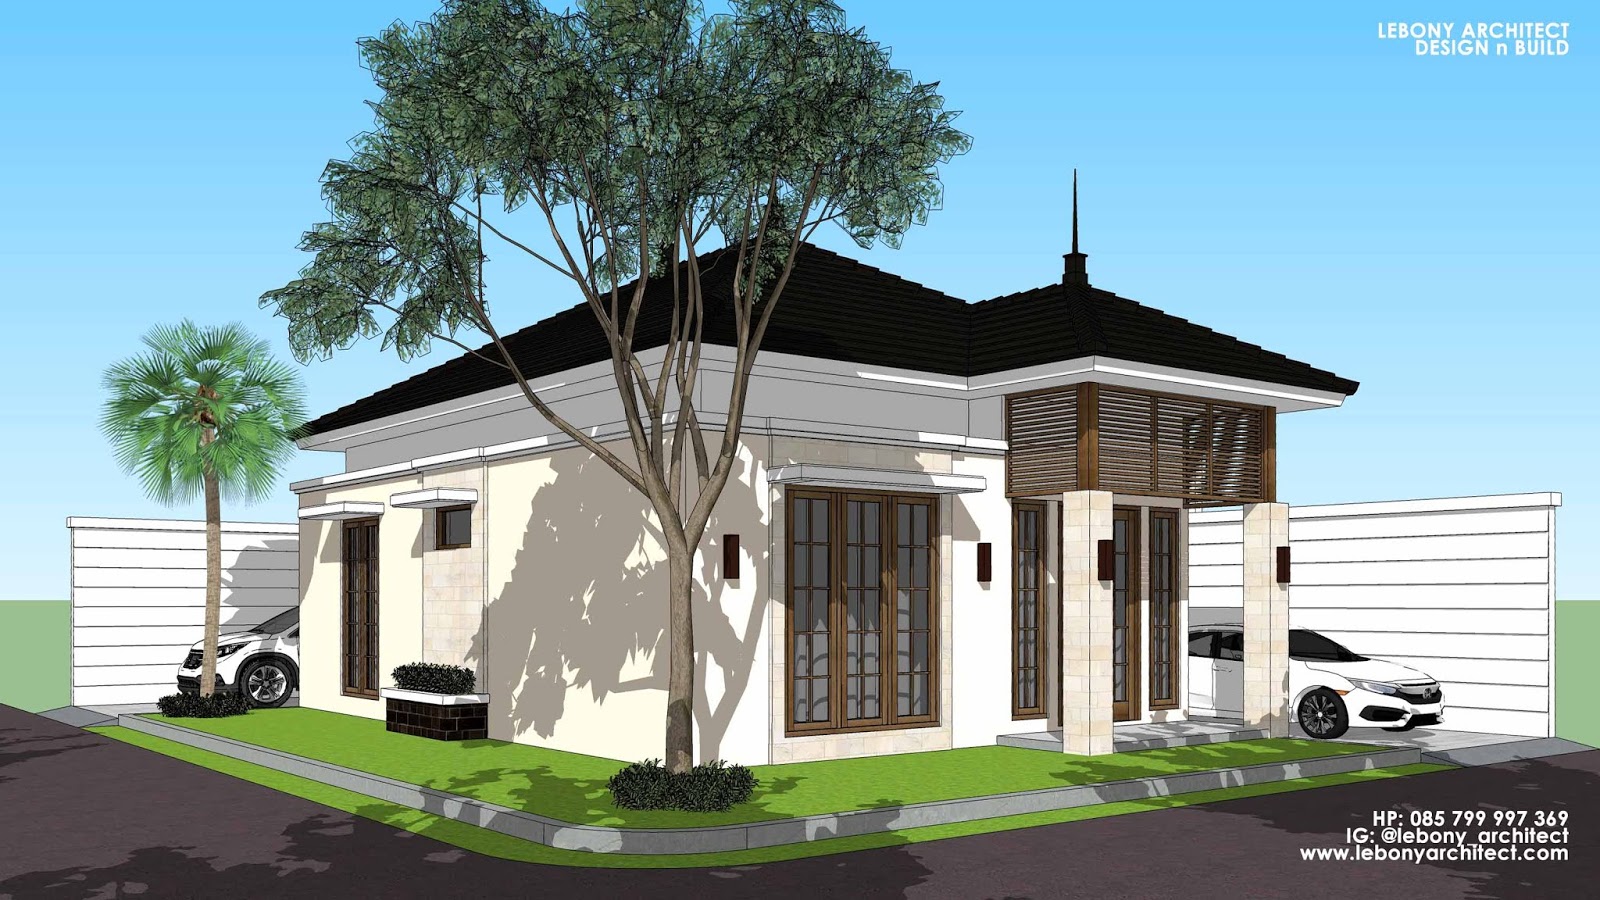 Lebony Architect Jasa Arsitek Semarang Desain Rumah Bapak Wid